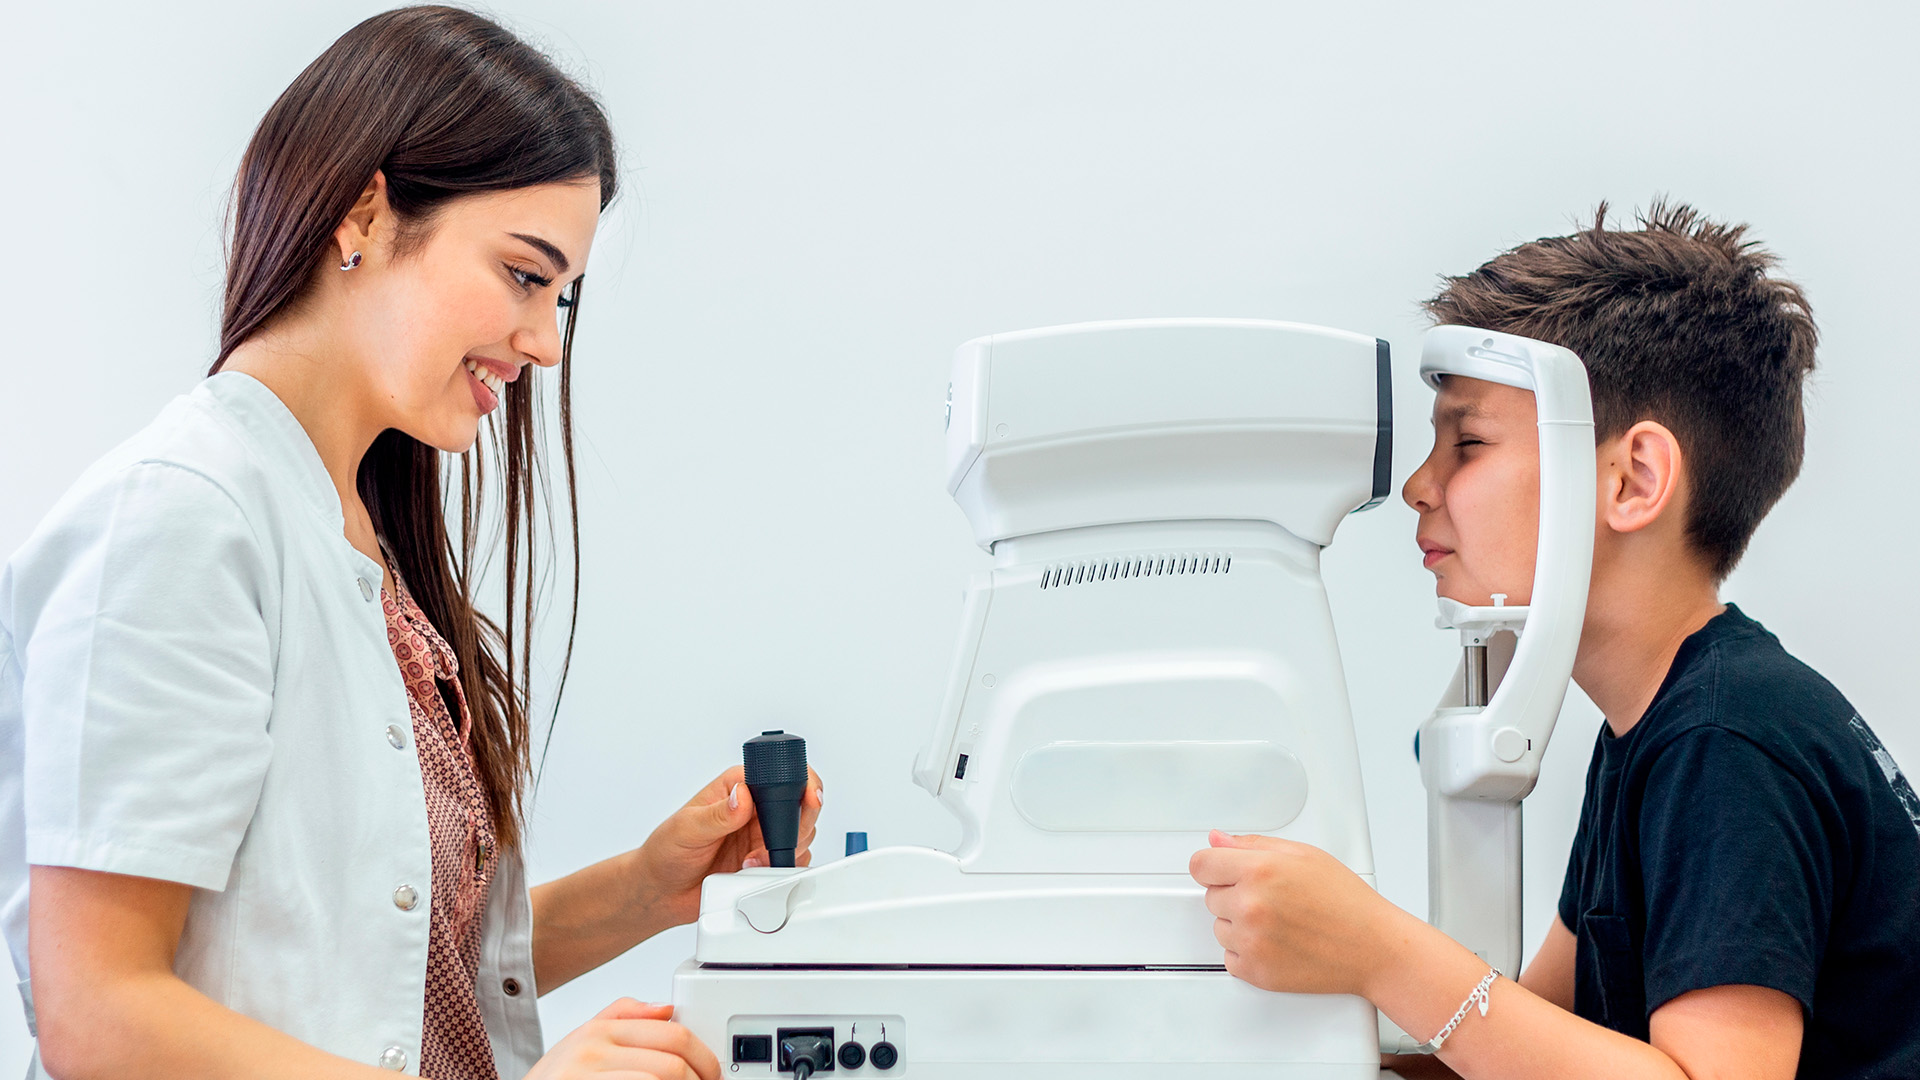 ¿Te revisaste la vista en el último año? En MarpeEstilo óptica en albacete somos especialistas en la salud ocular.